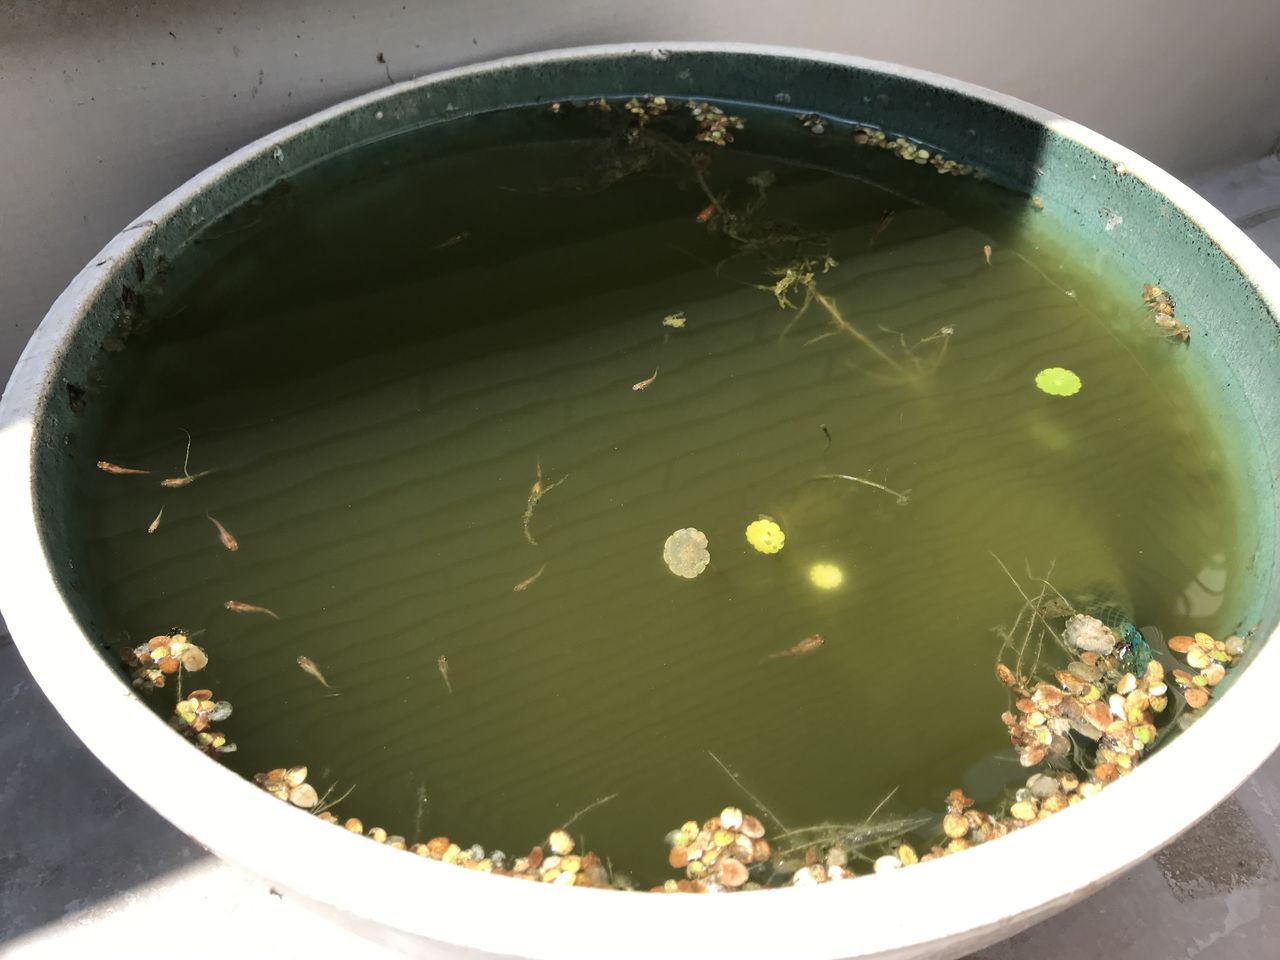 メダカ喜ぶ水草 ナガバオモダカ を鉢に入れる 水槽にやったことを忘れないように書いておくブログ